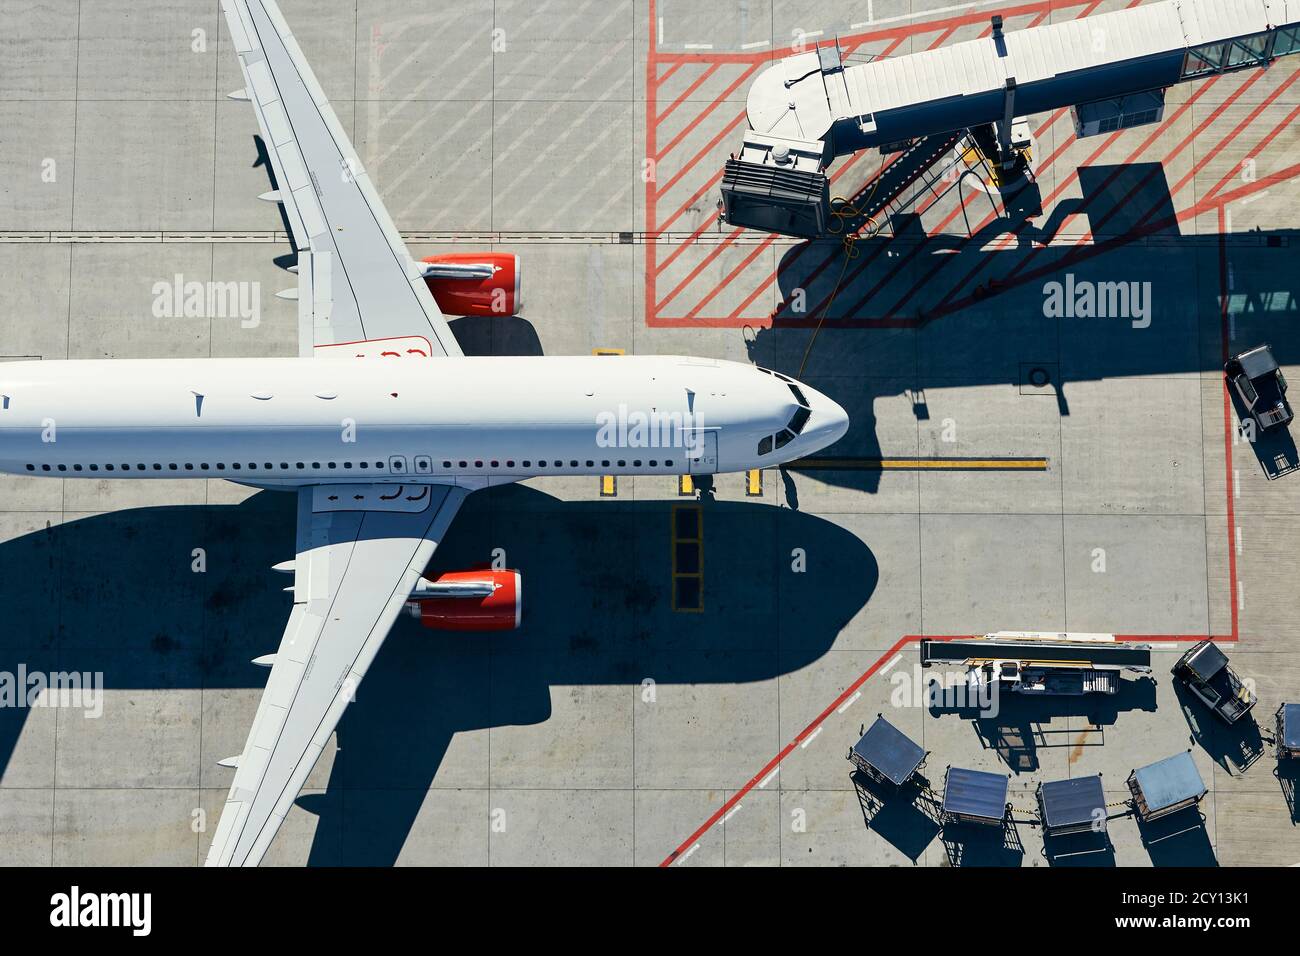 Vista aerea dell'aeroporto. L'aereo sta tassando al cancello del terminal. Foto Stock